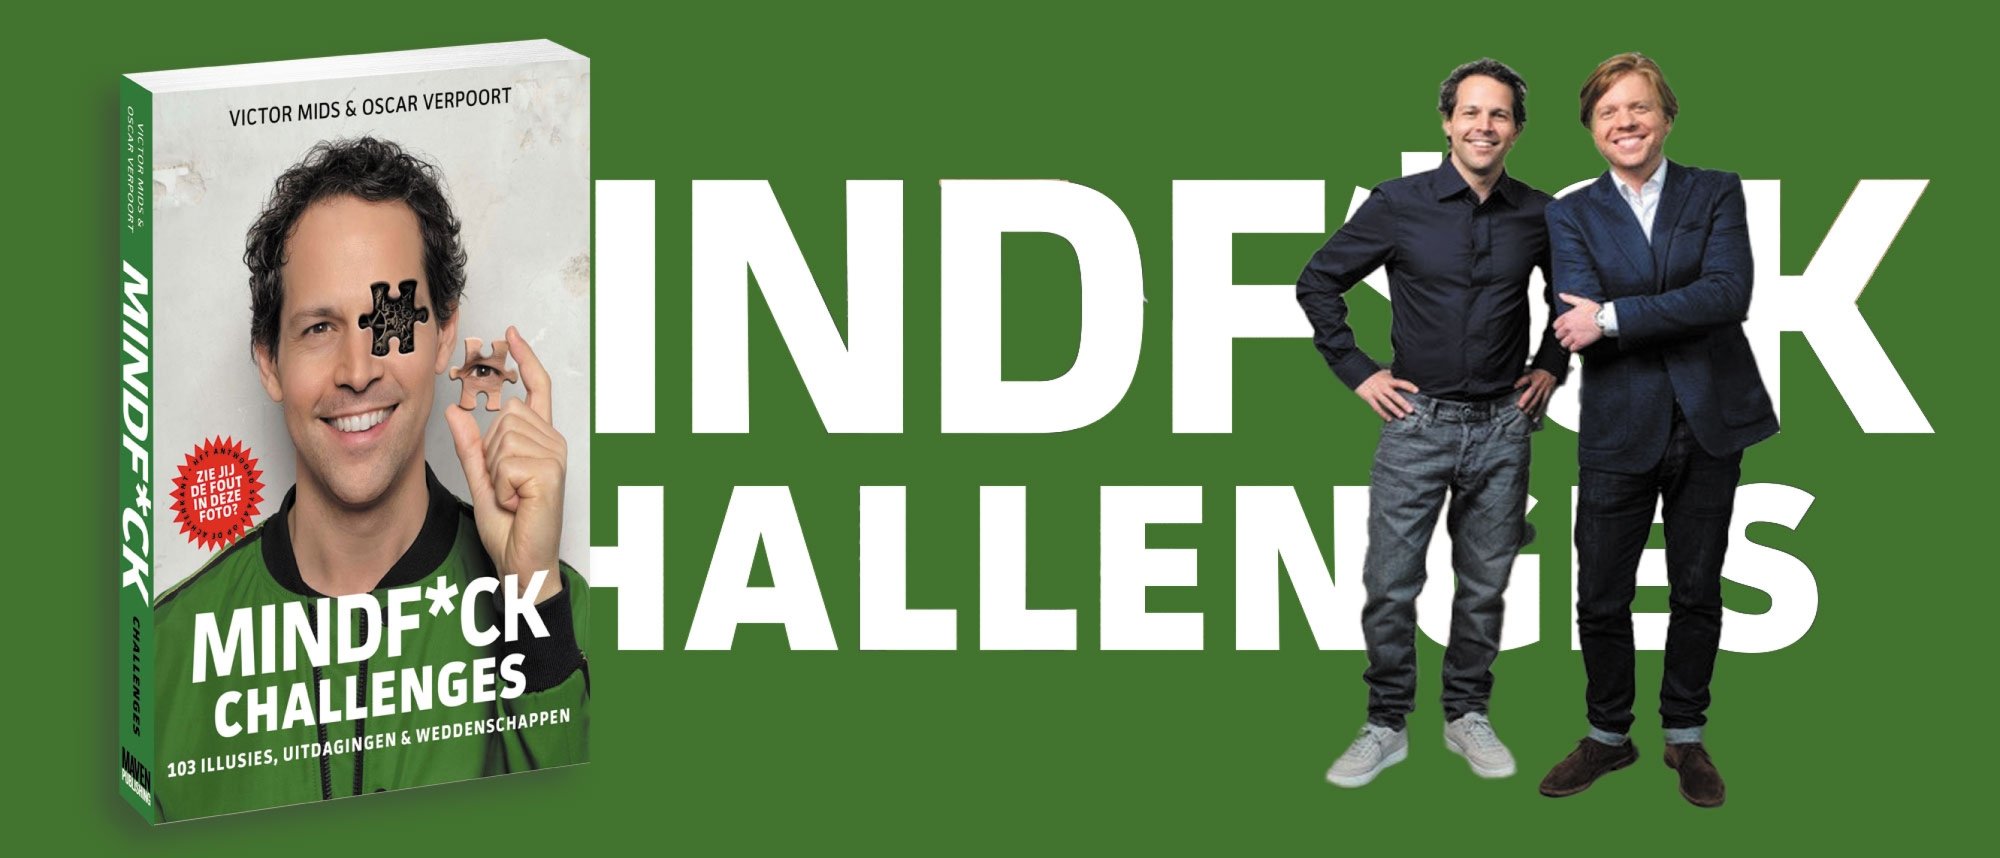 Mindf*ck Challenges met Victor Mids en Oscar Verpoort